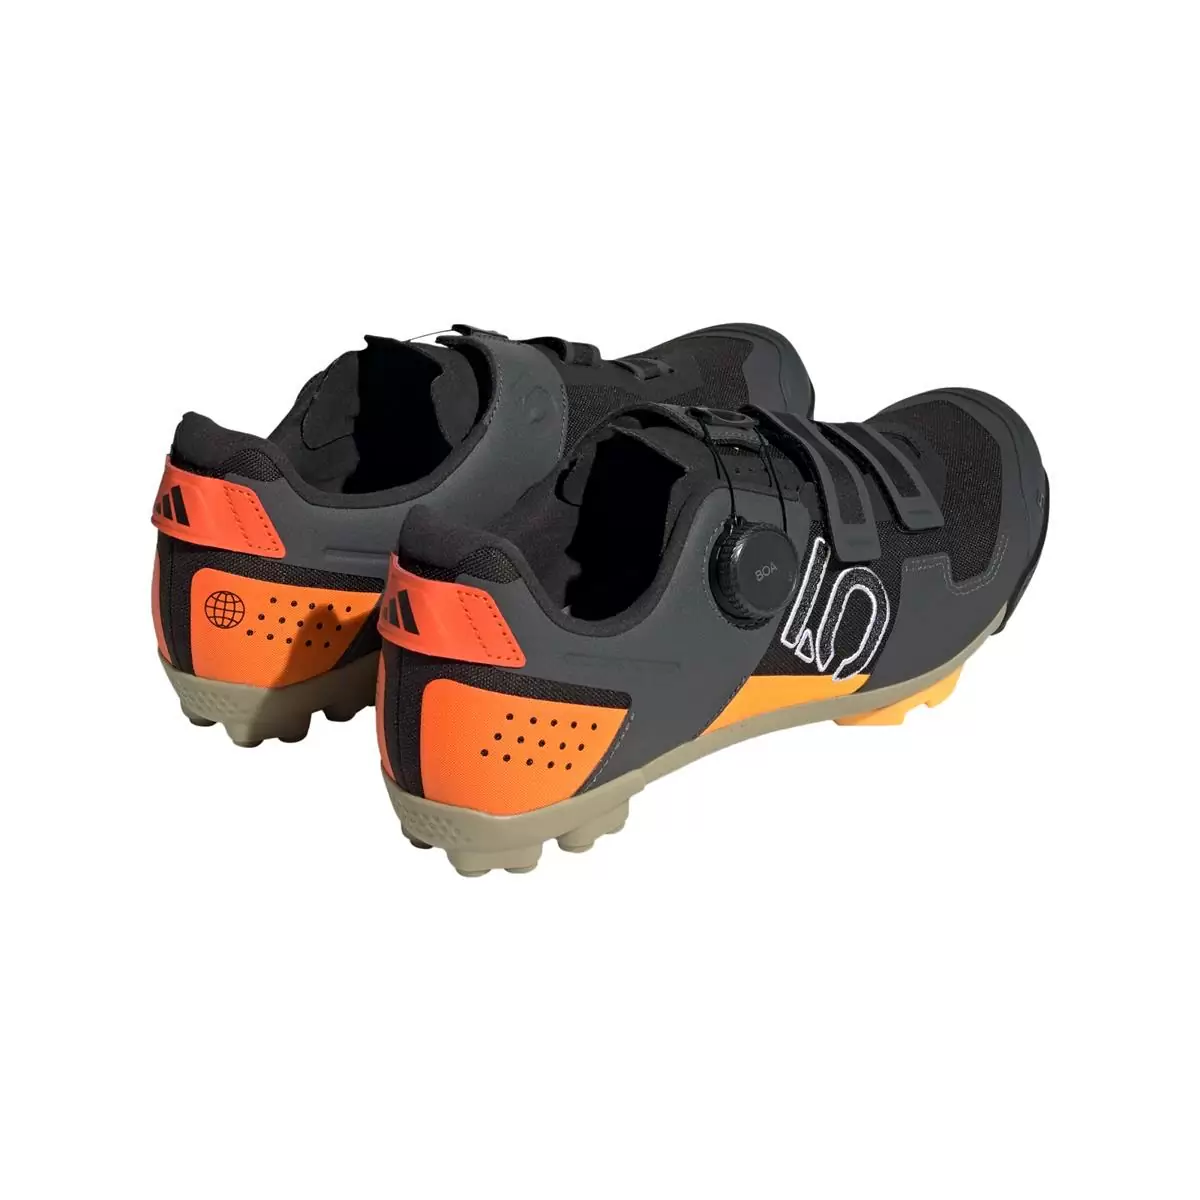 Clip 5.10 Kestrel Boa MTB Shoes Black/Orange Size 45 #4